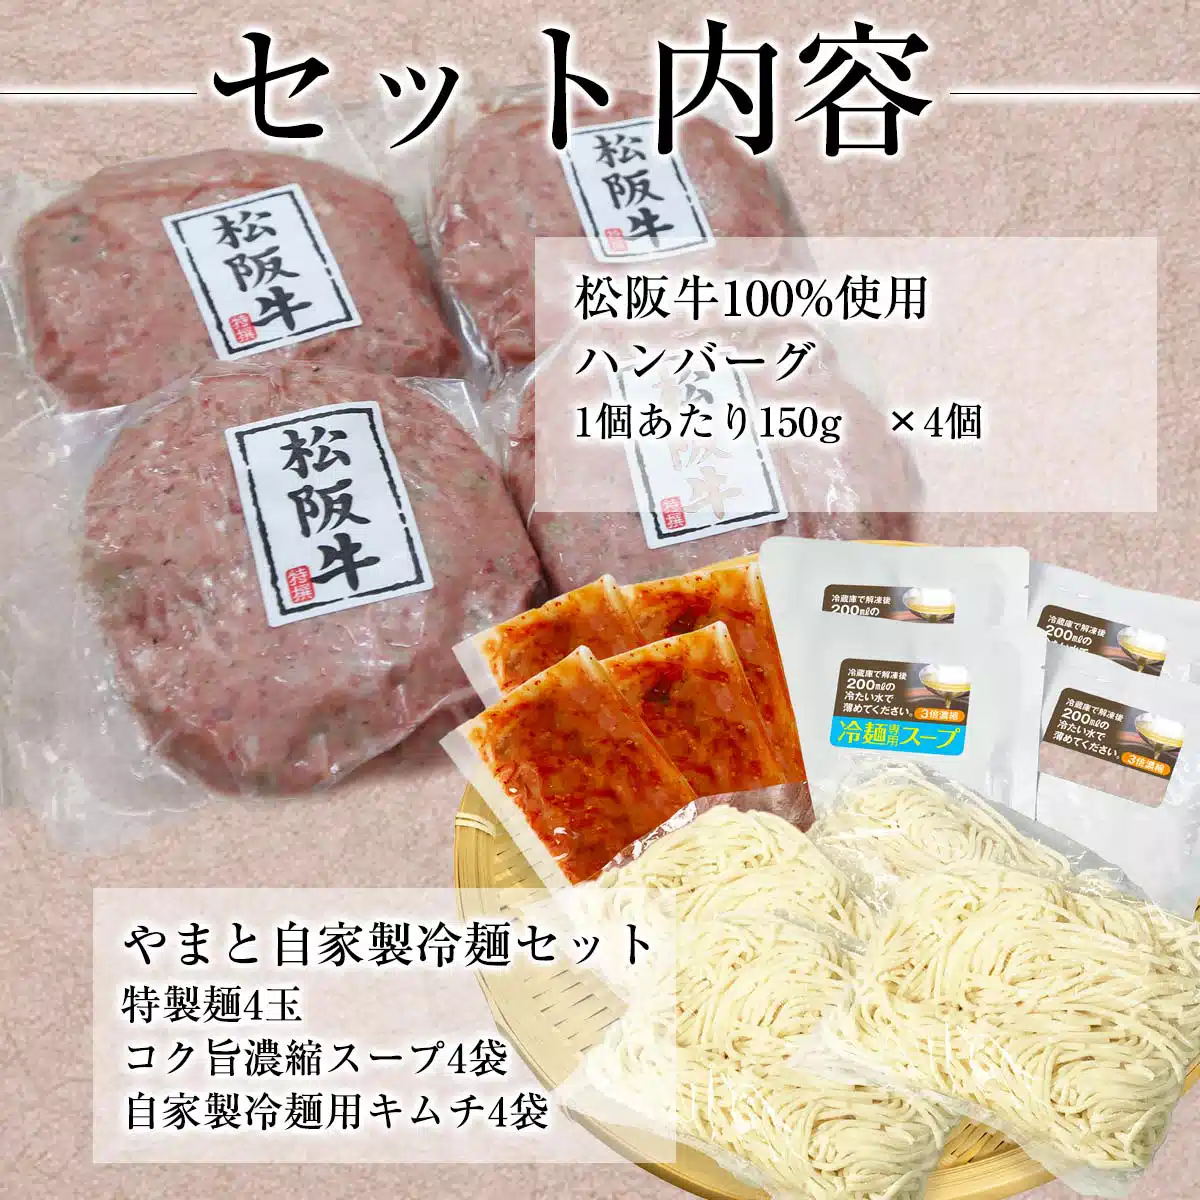 松阪牛ハンバーグ4個+冷麺4食セット